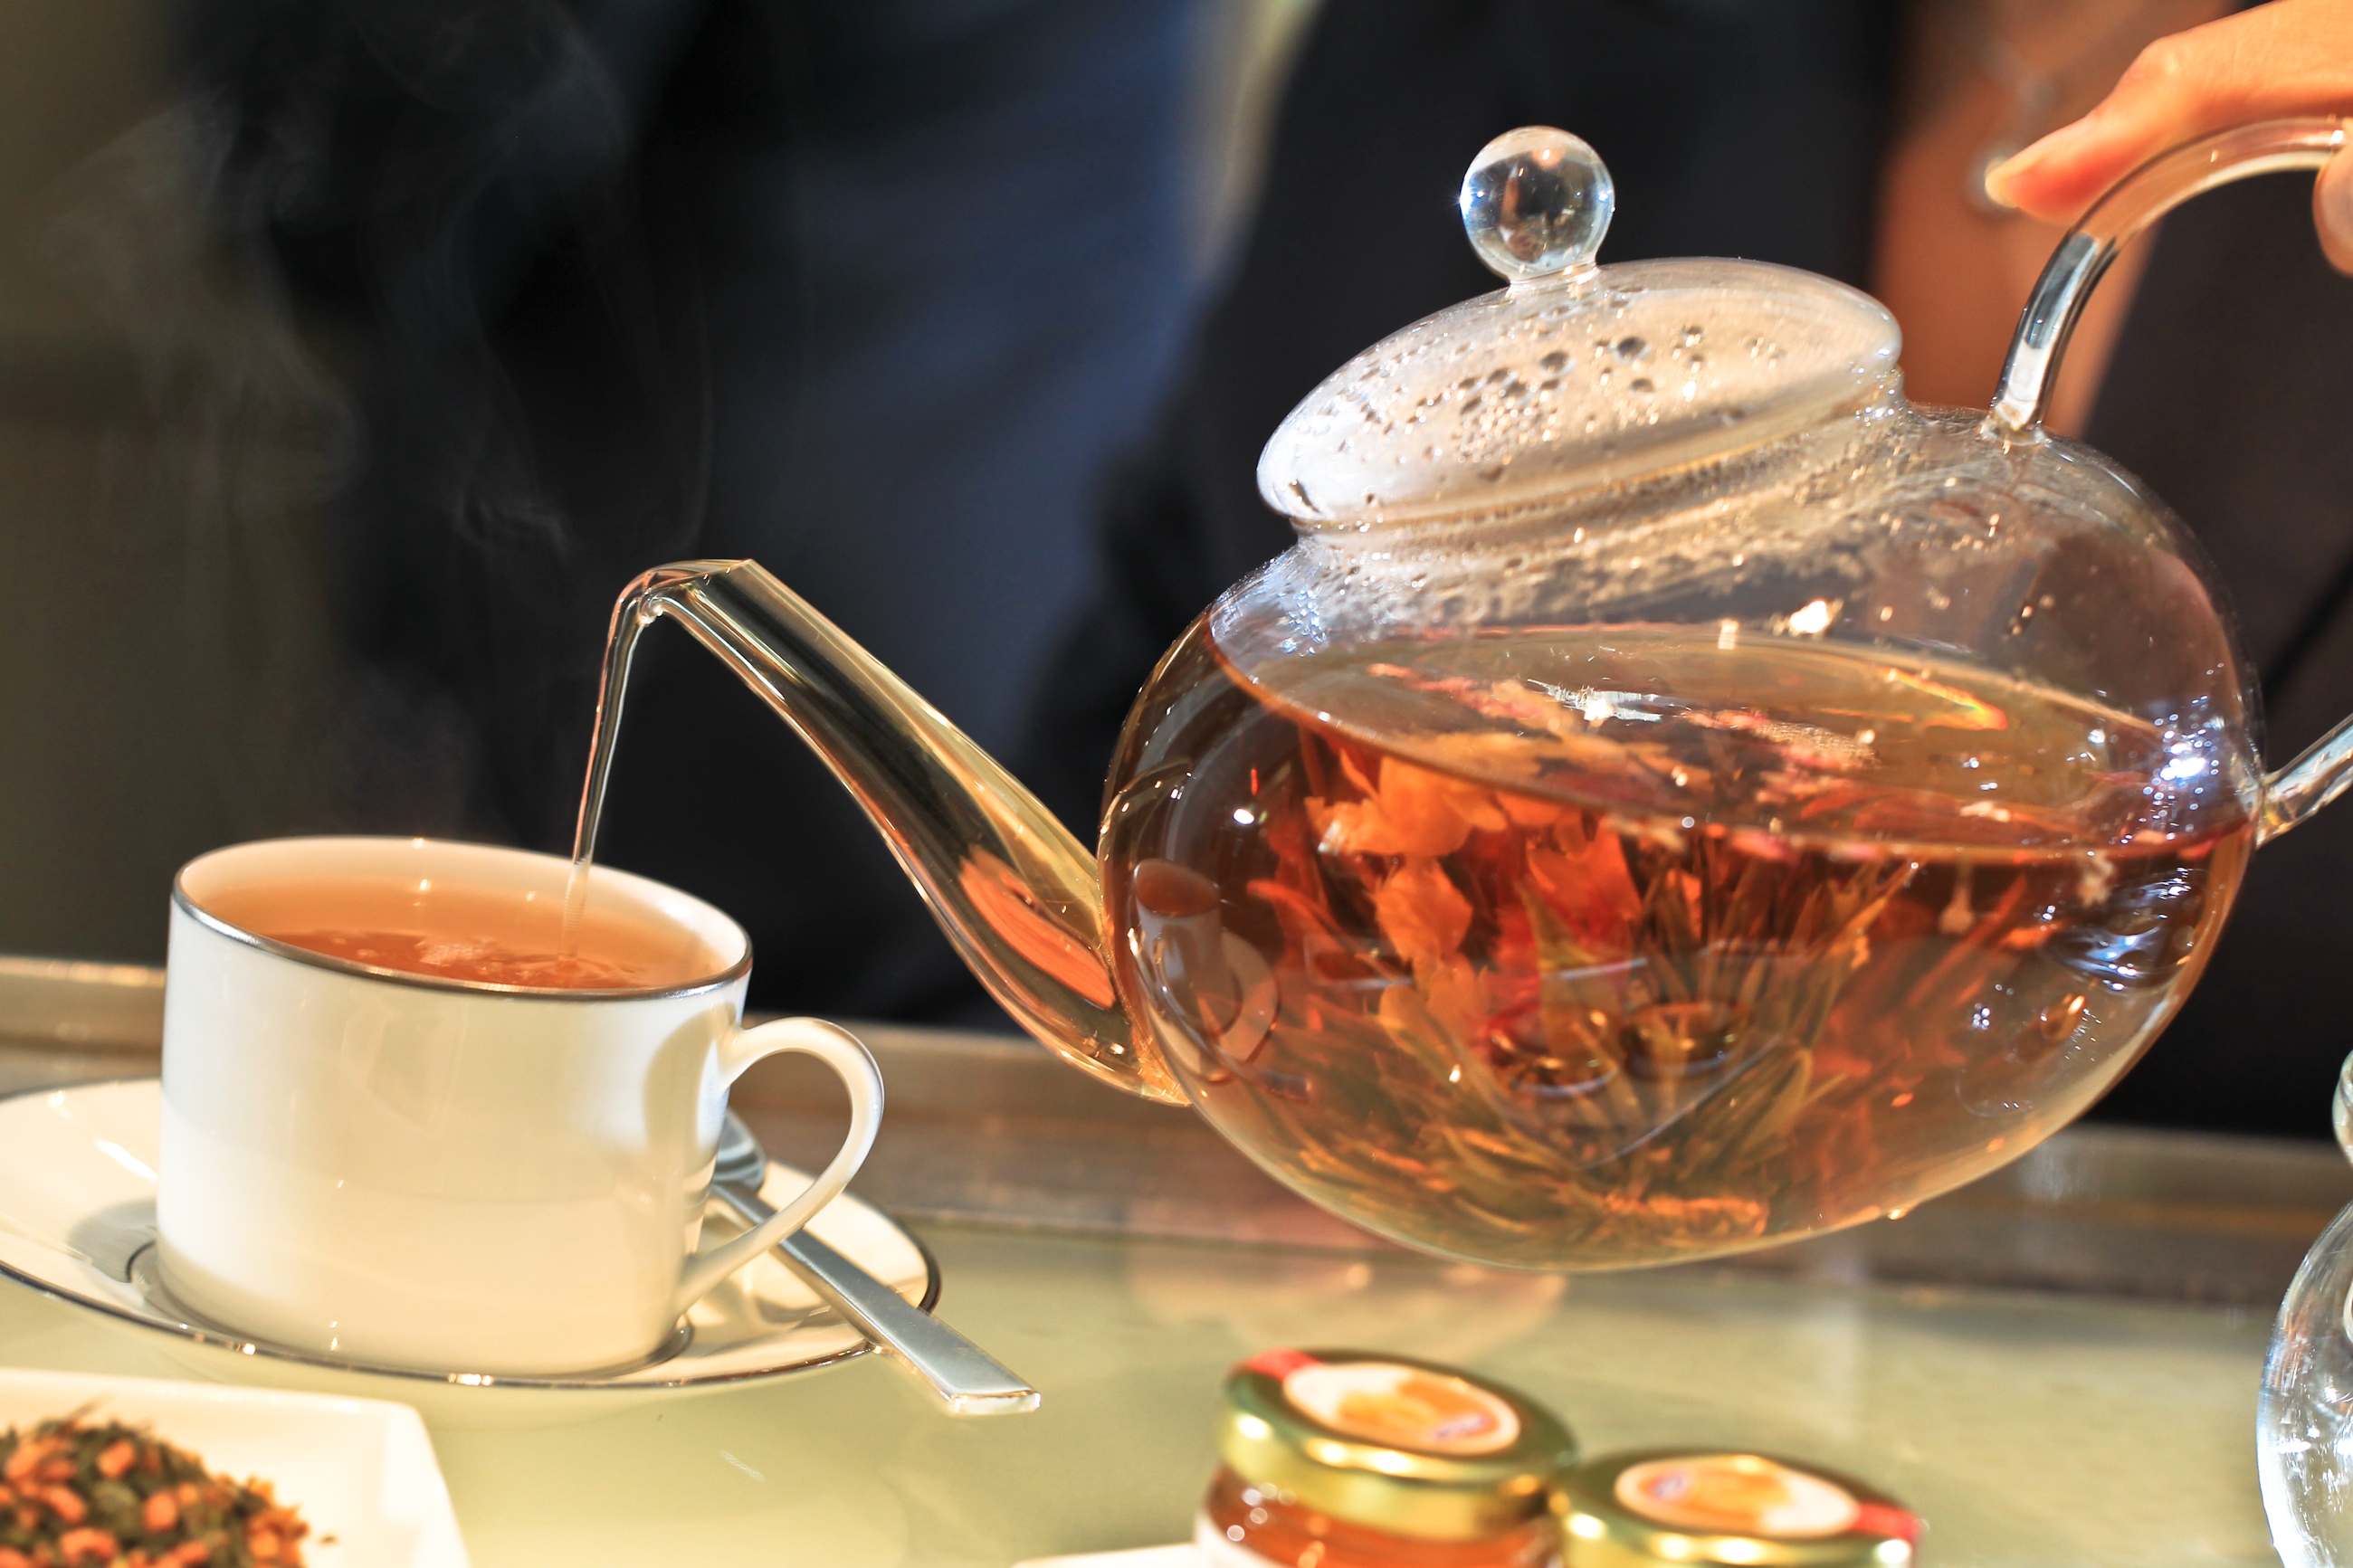 Вчерашний чай можно пить. Чай в чайнике. Красивый чай в чайнике. Чайник с чаем. Горячий чай.